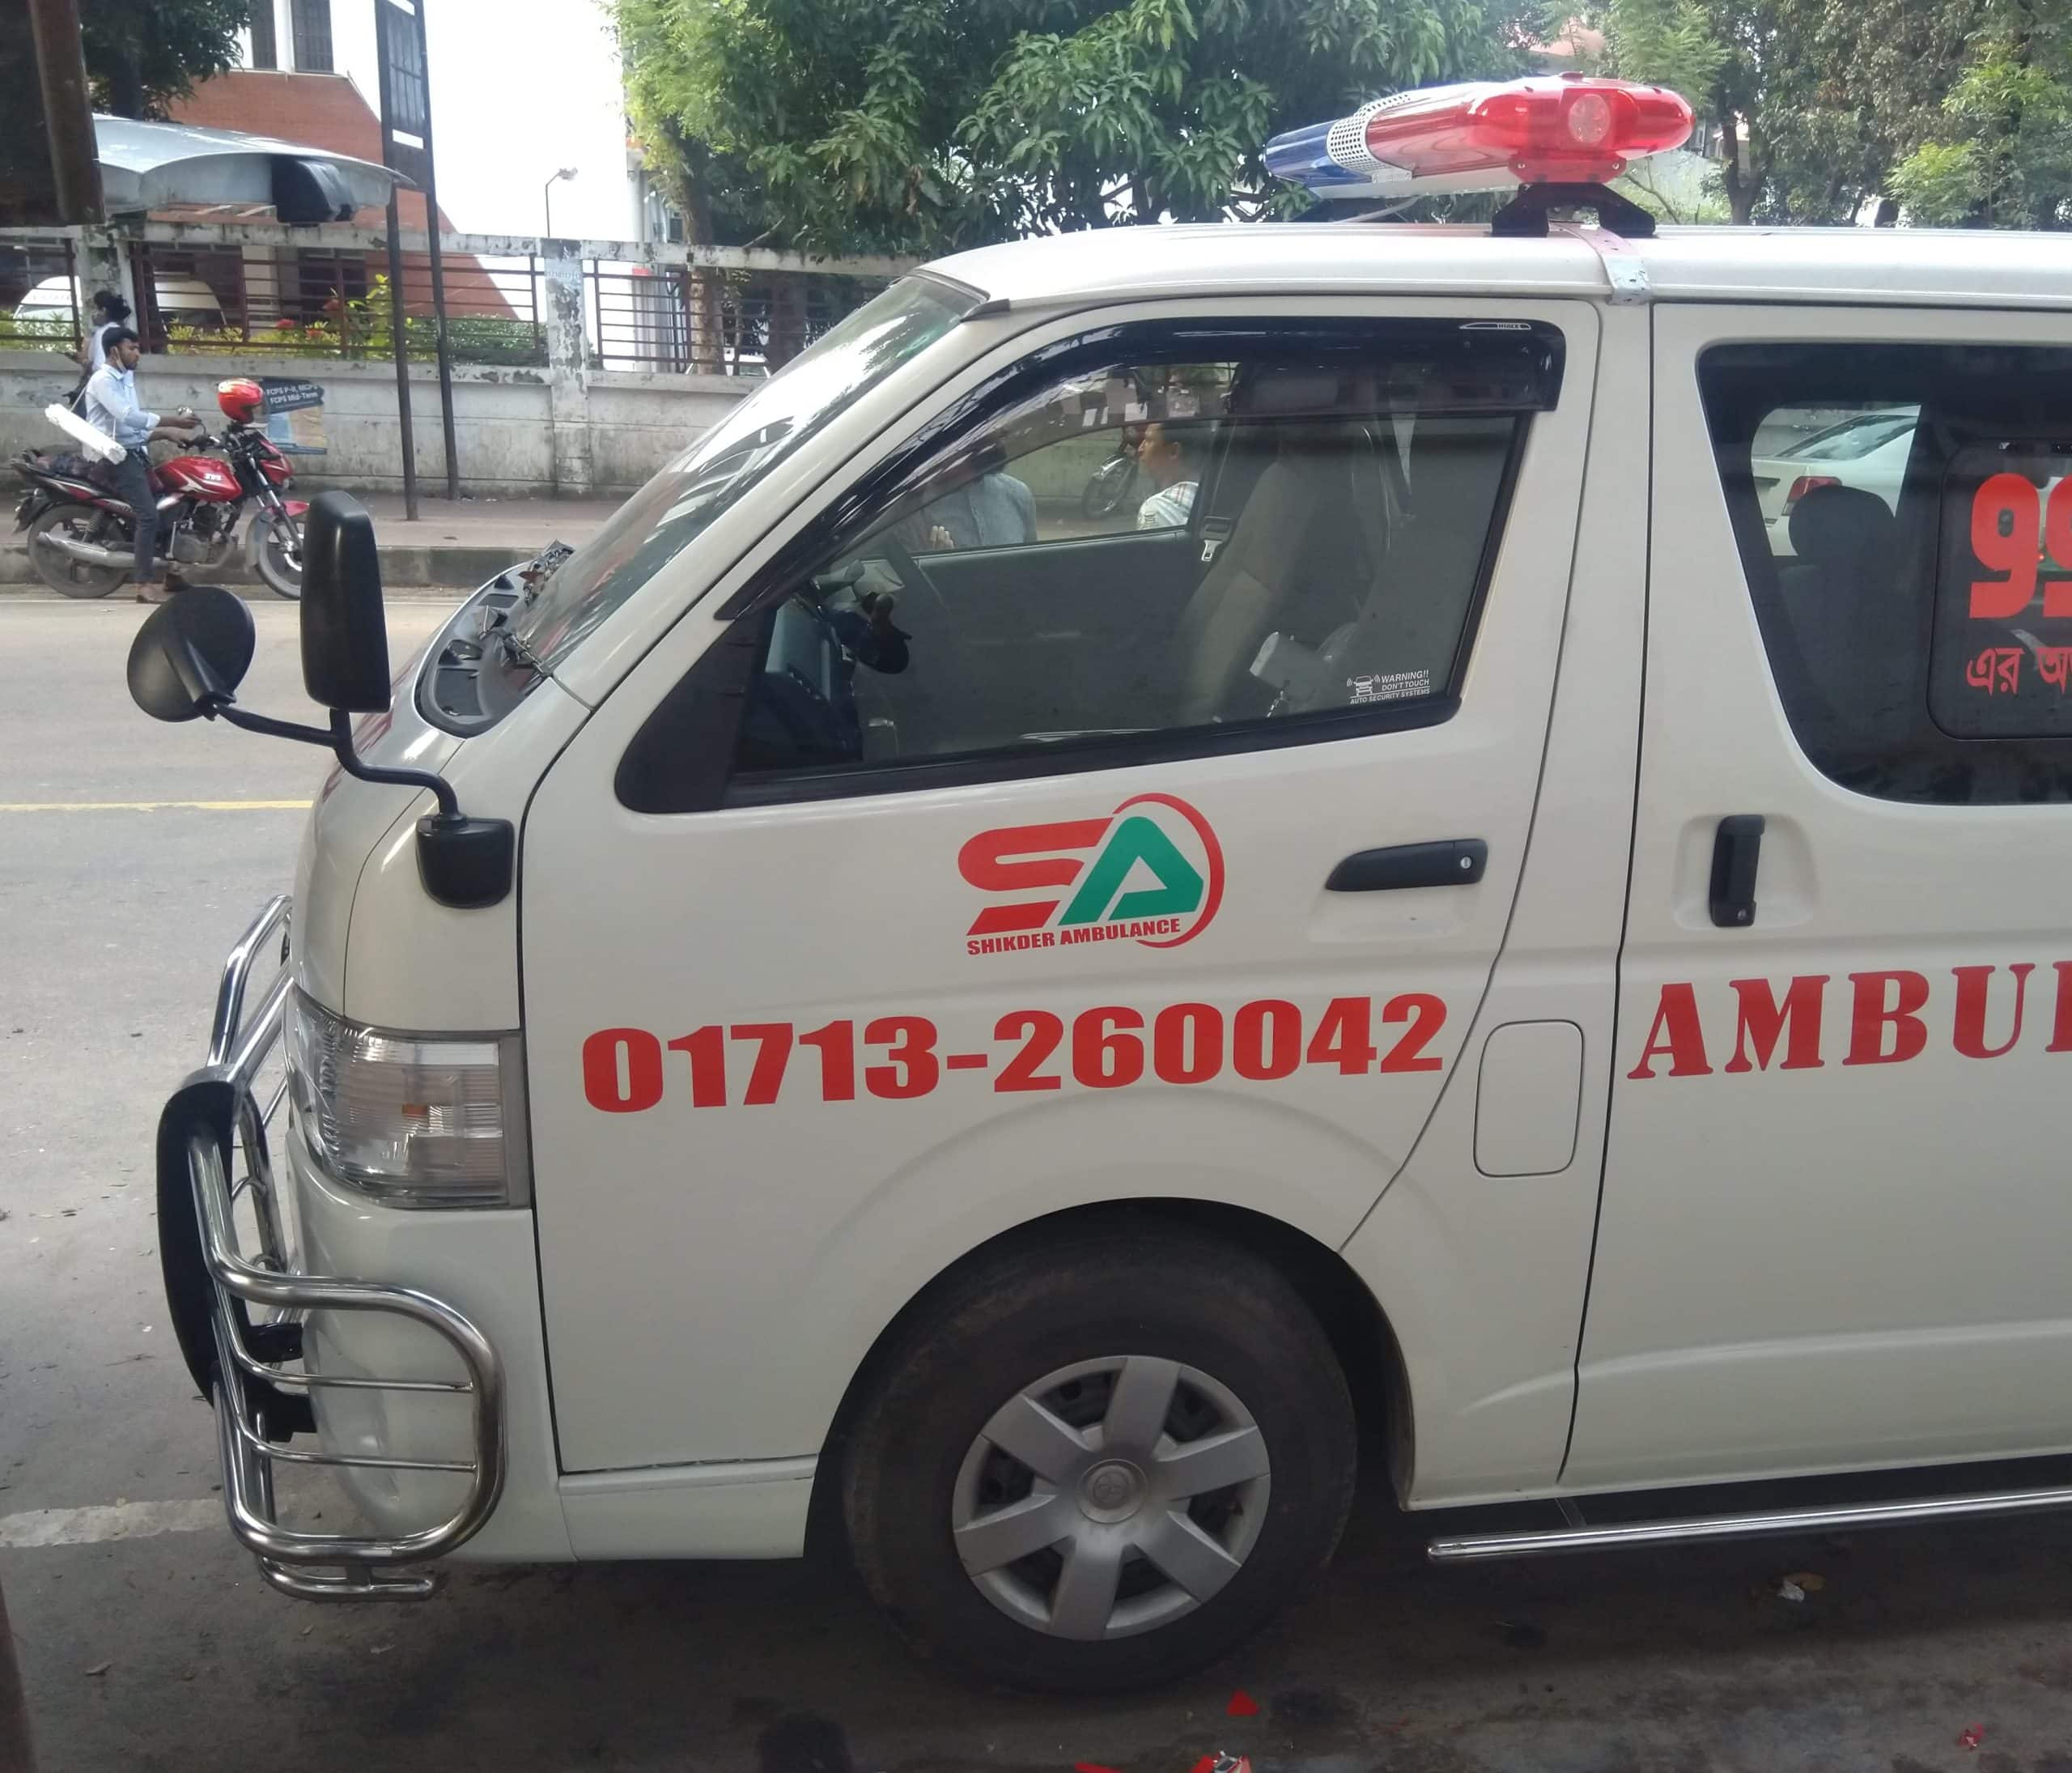 Amtali-Ambulance-service-ac-ambulance